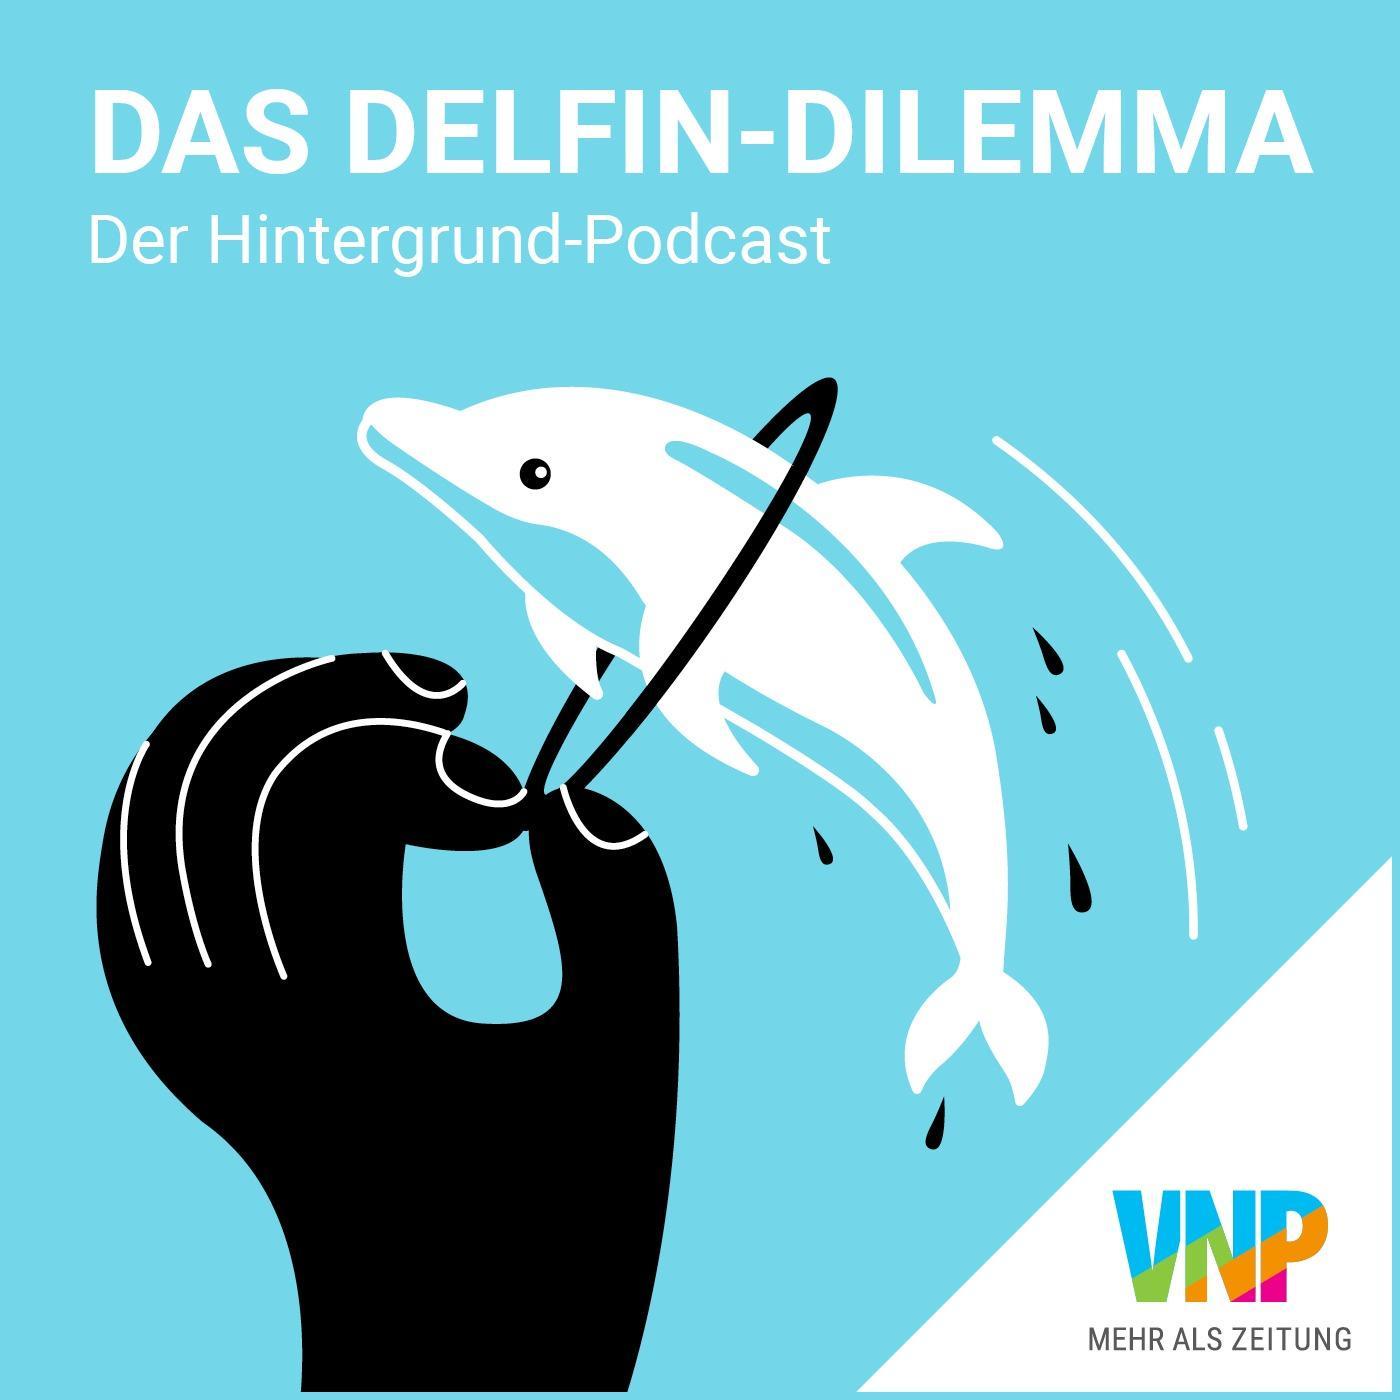 Das Delfin-Dilemma